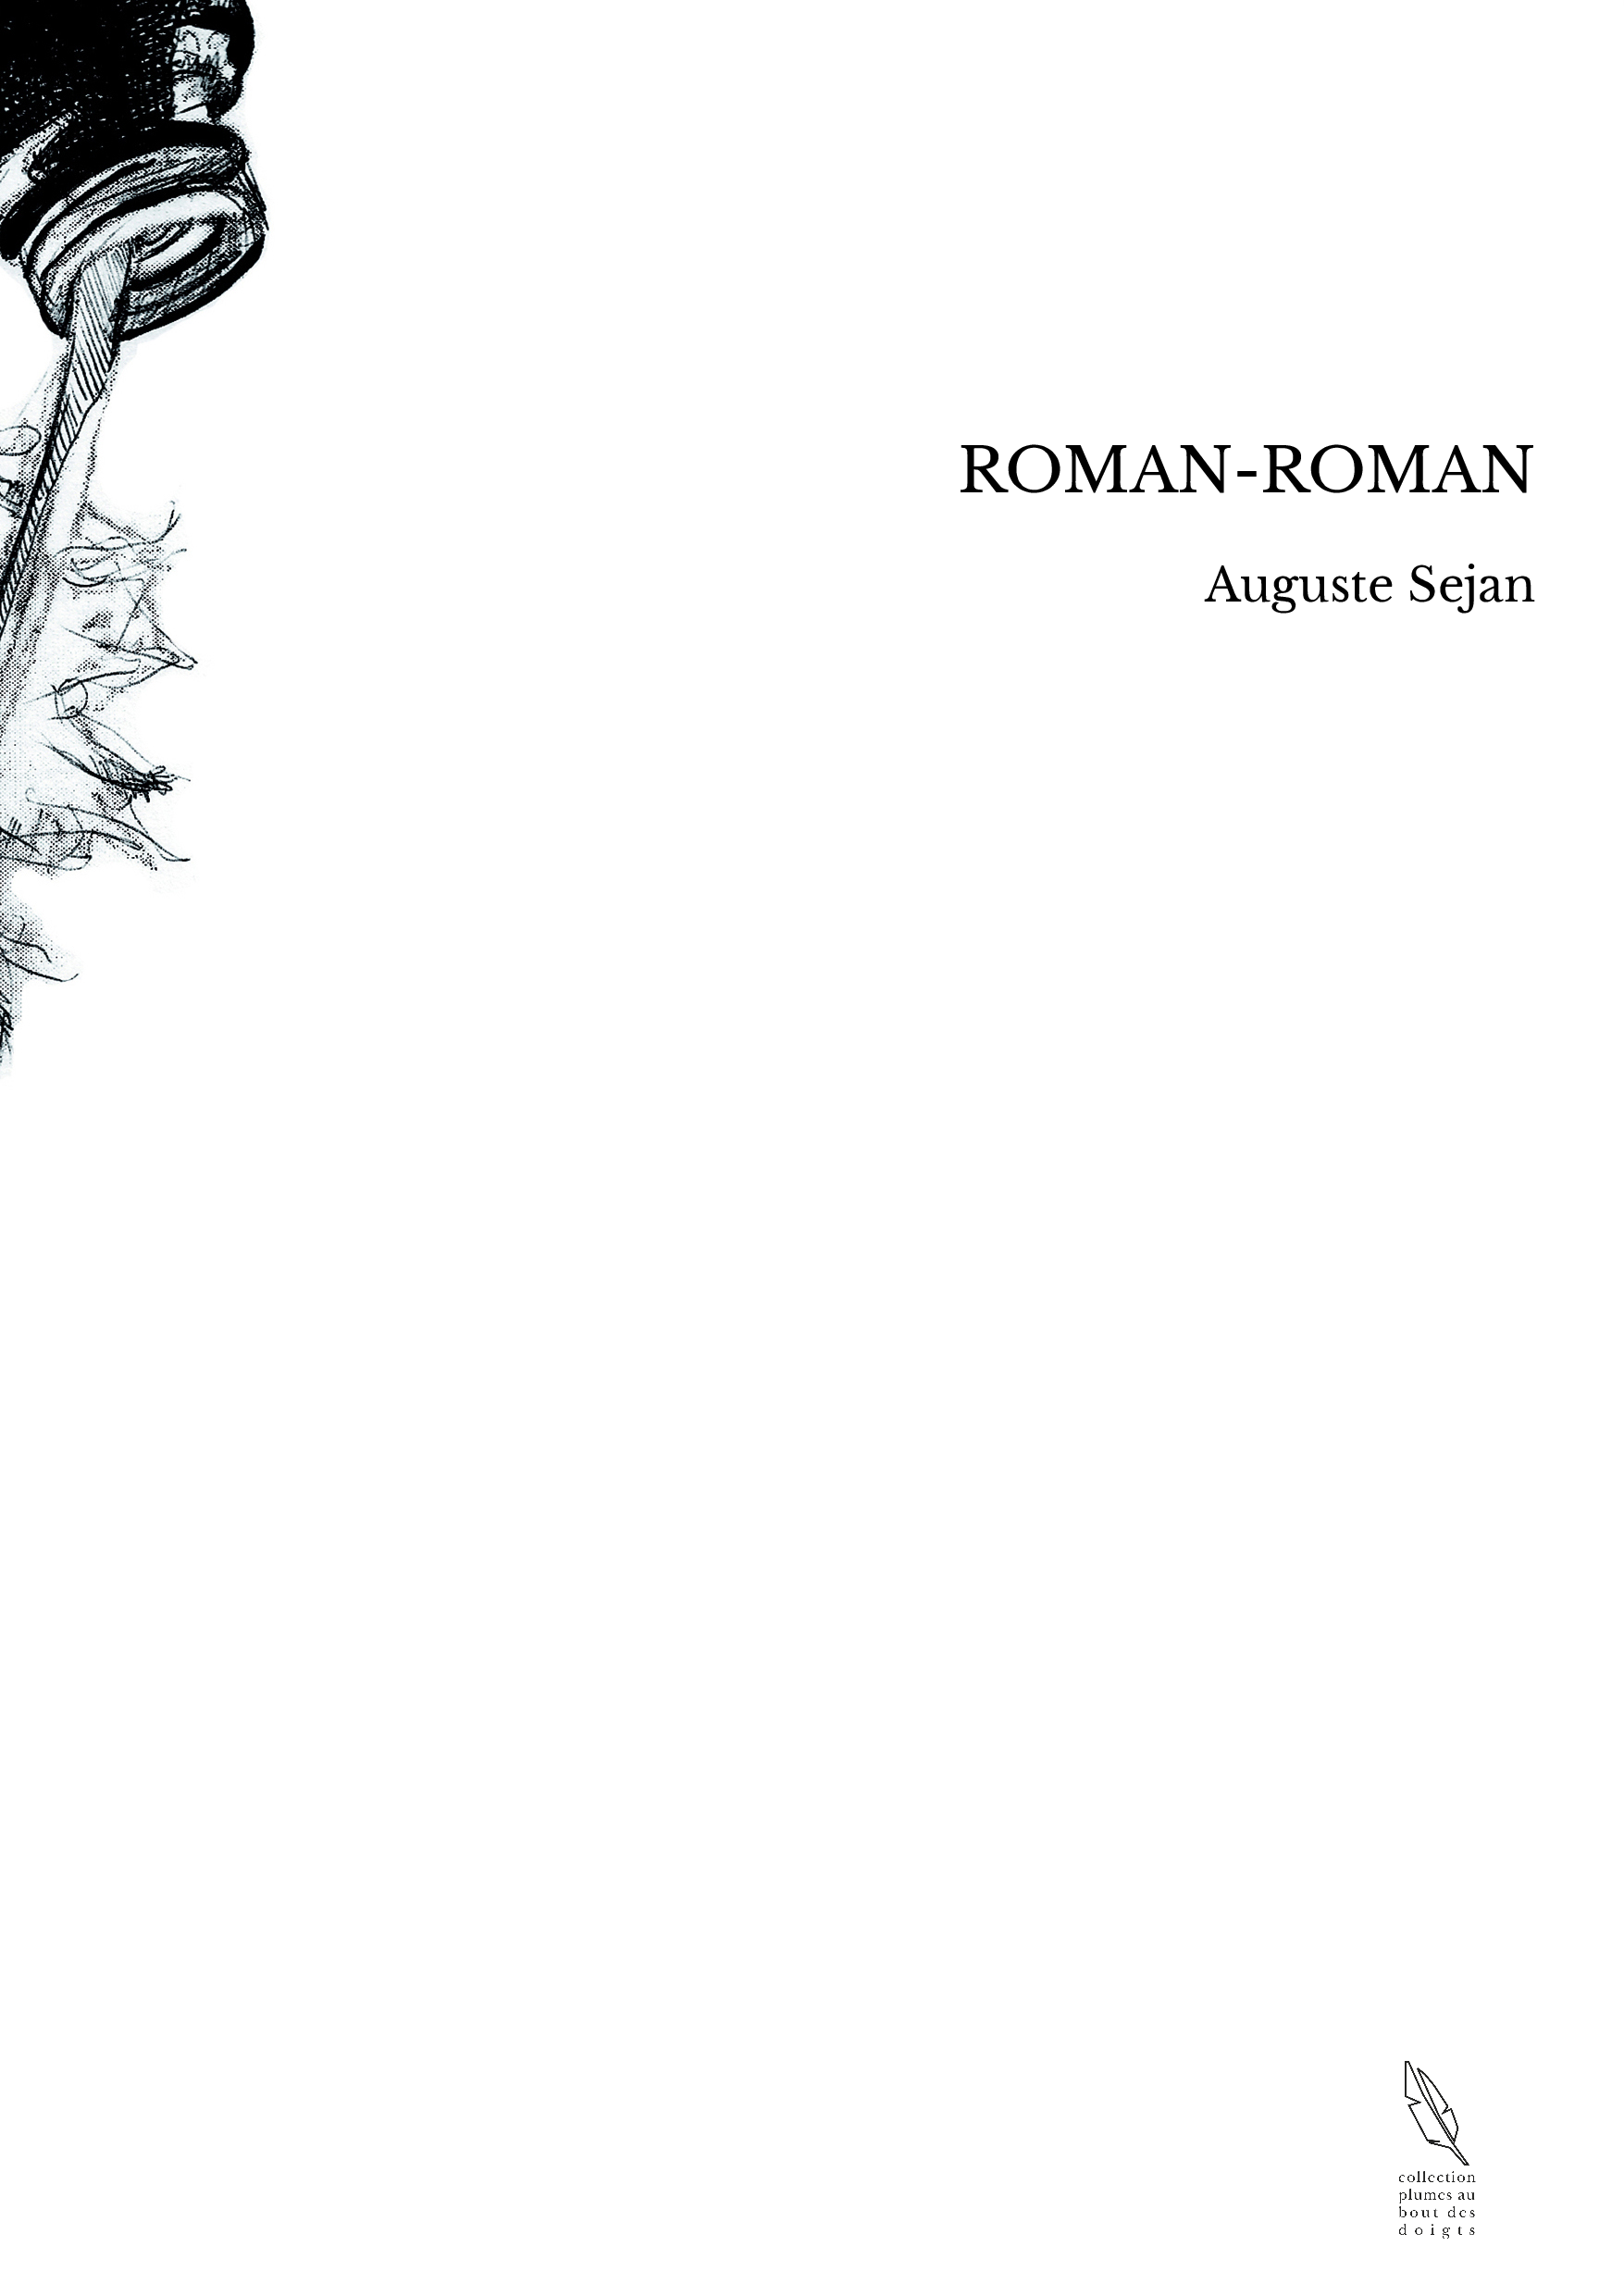 ROMAN-ROMAN